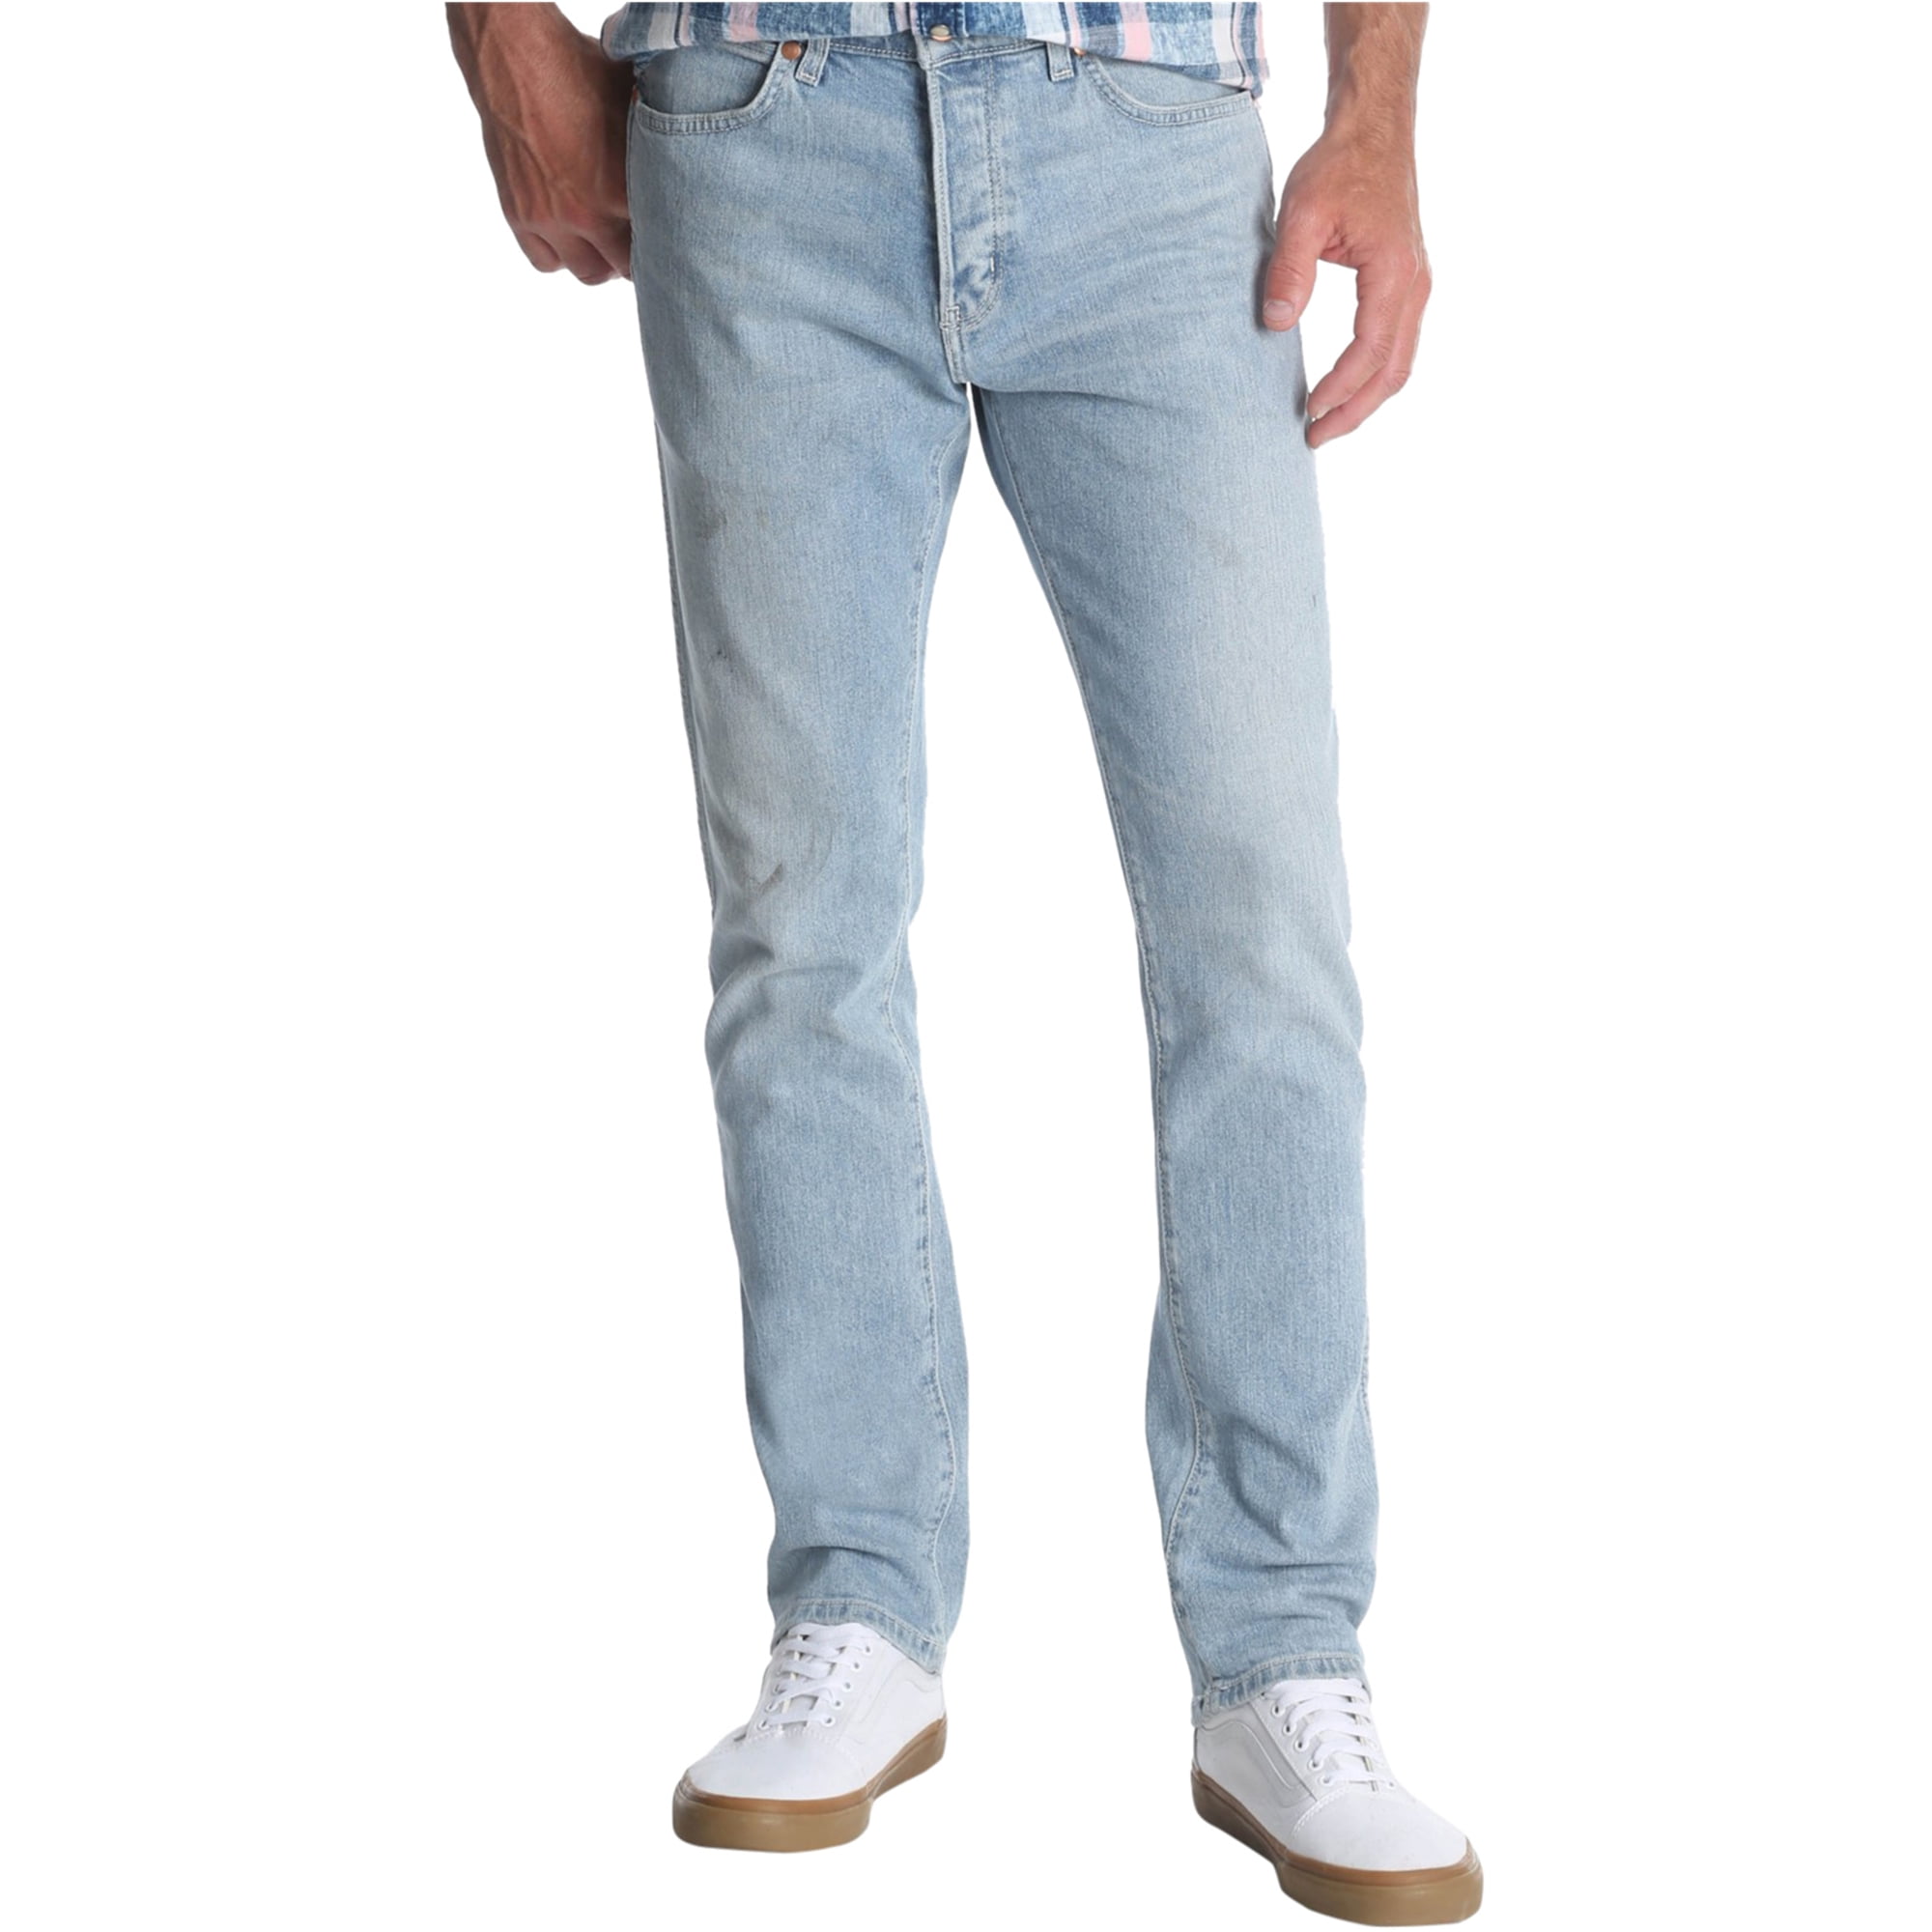 Wrangler - Wrangler Mens Spencer Slim Fit Jeans - Walmart.com - Walmart.com